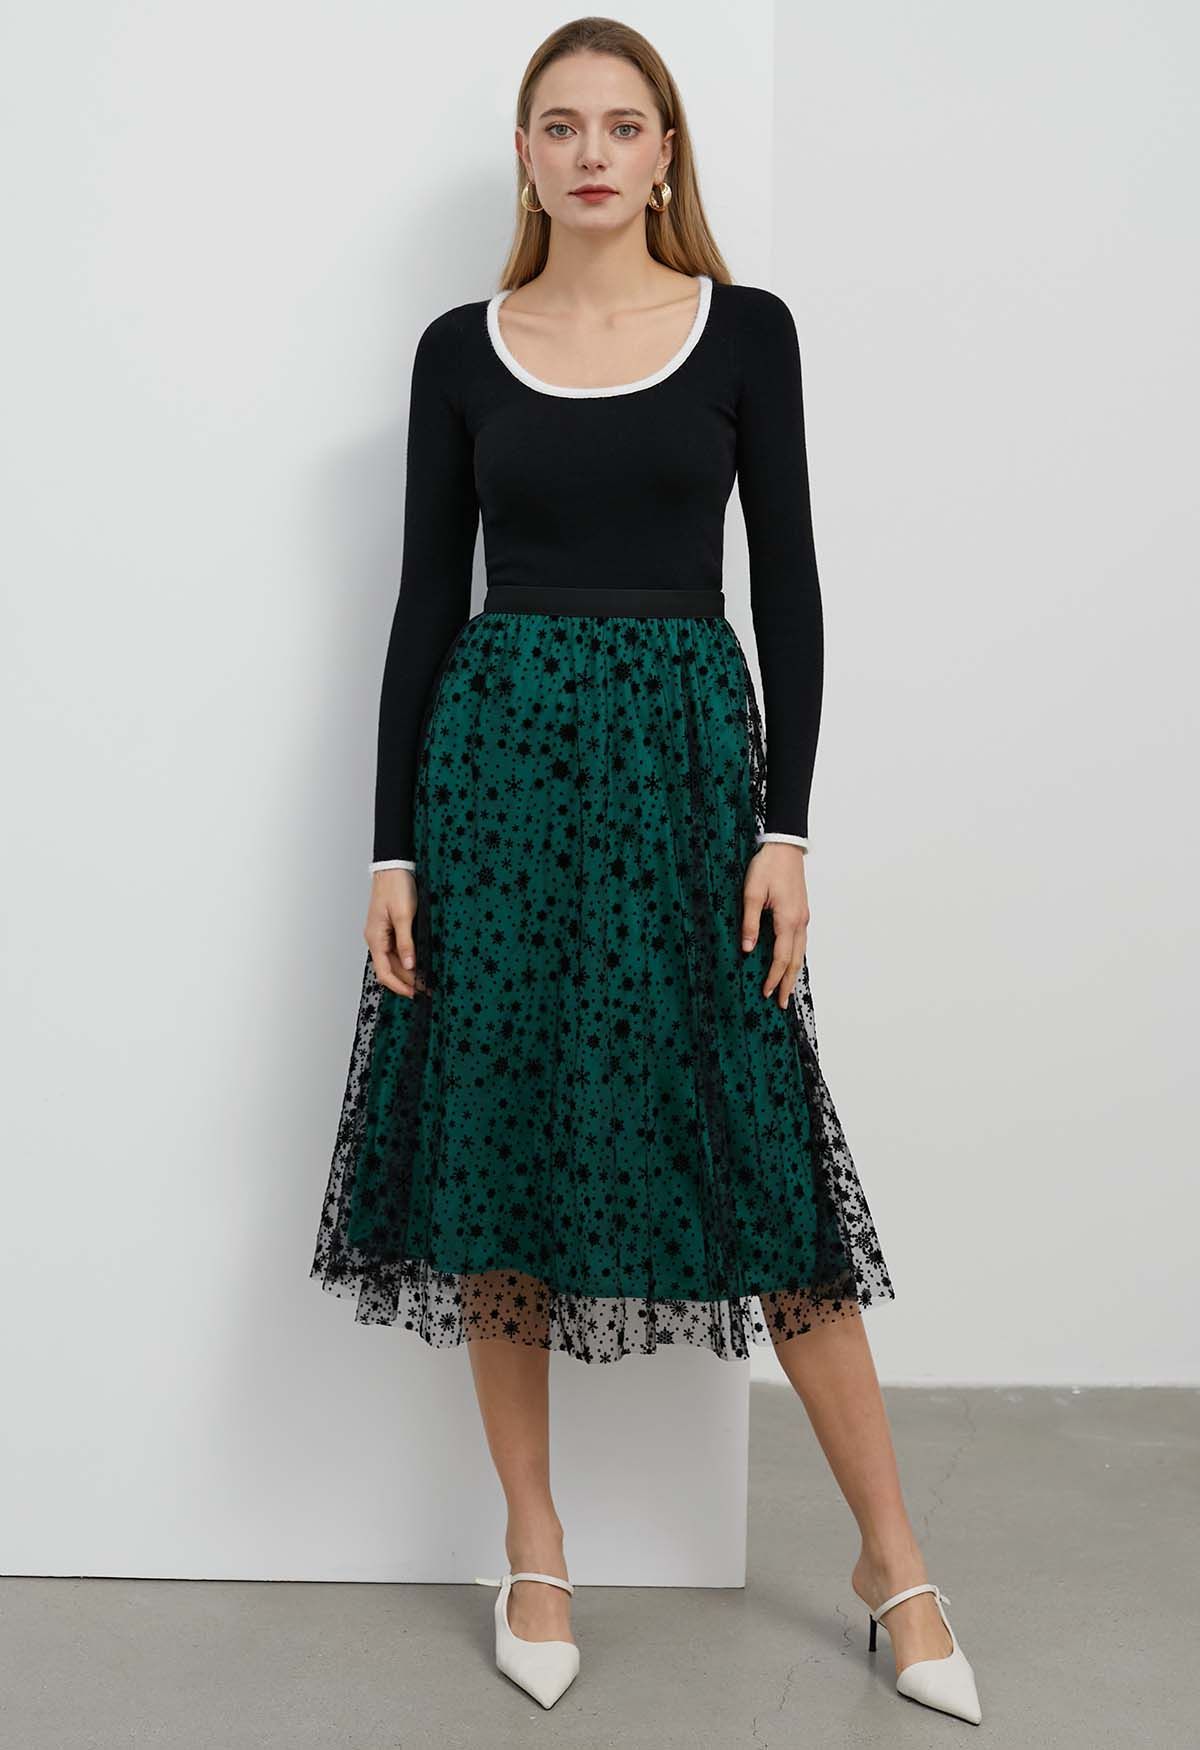 Velvet Snowflake Mesh Tulle Midi Skirt in Dark Green